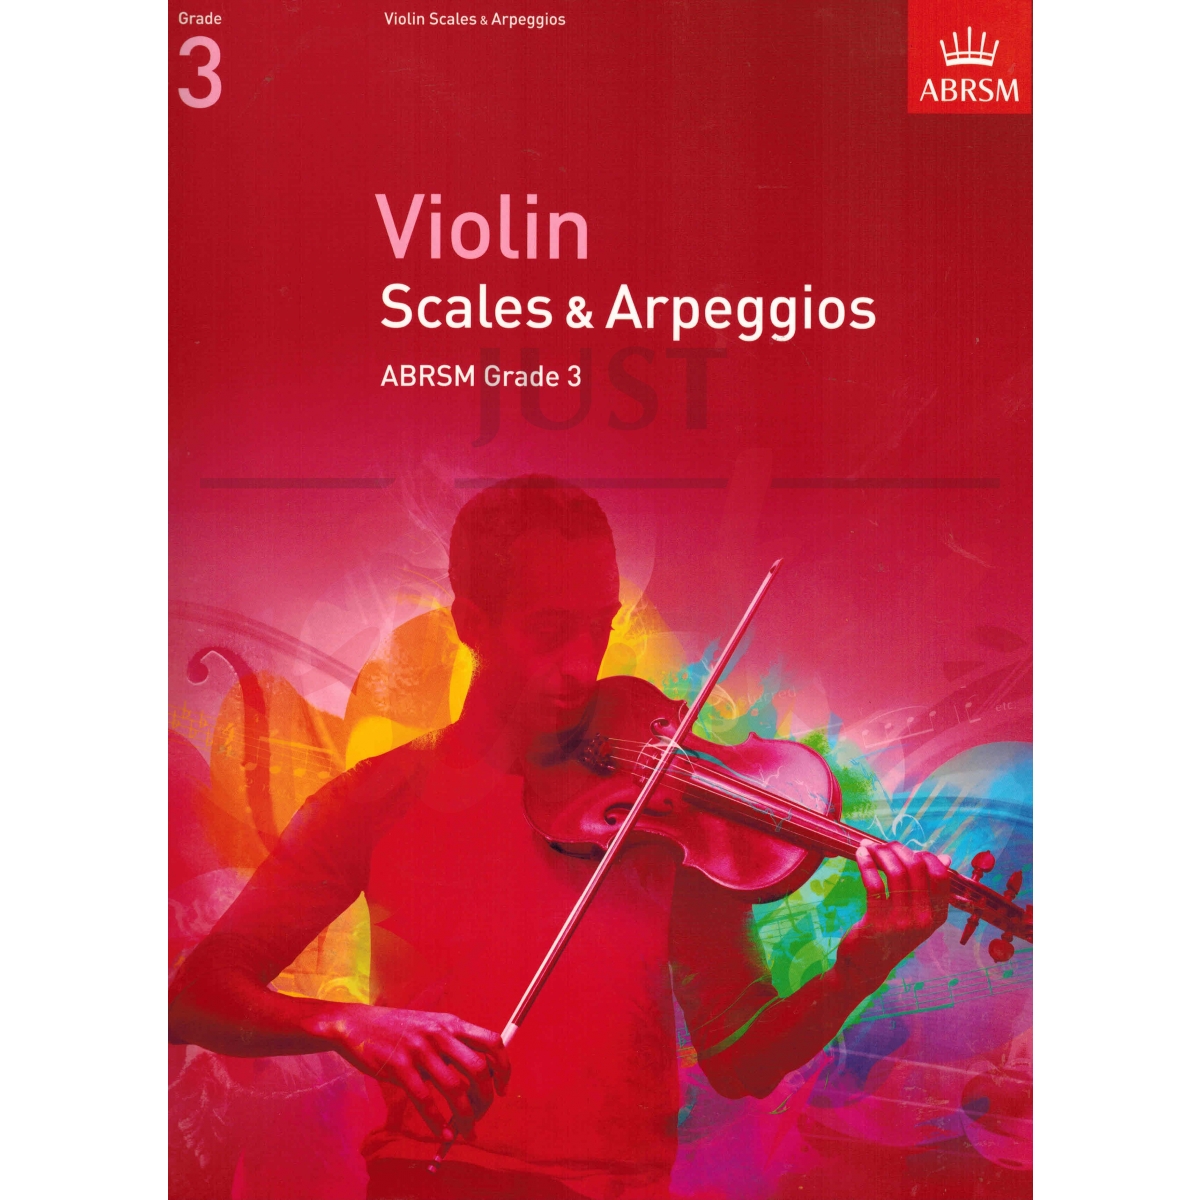 Scales and Arpeggios for Violin Grade 3